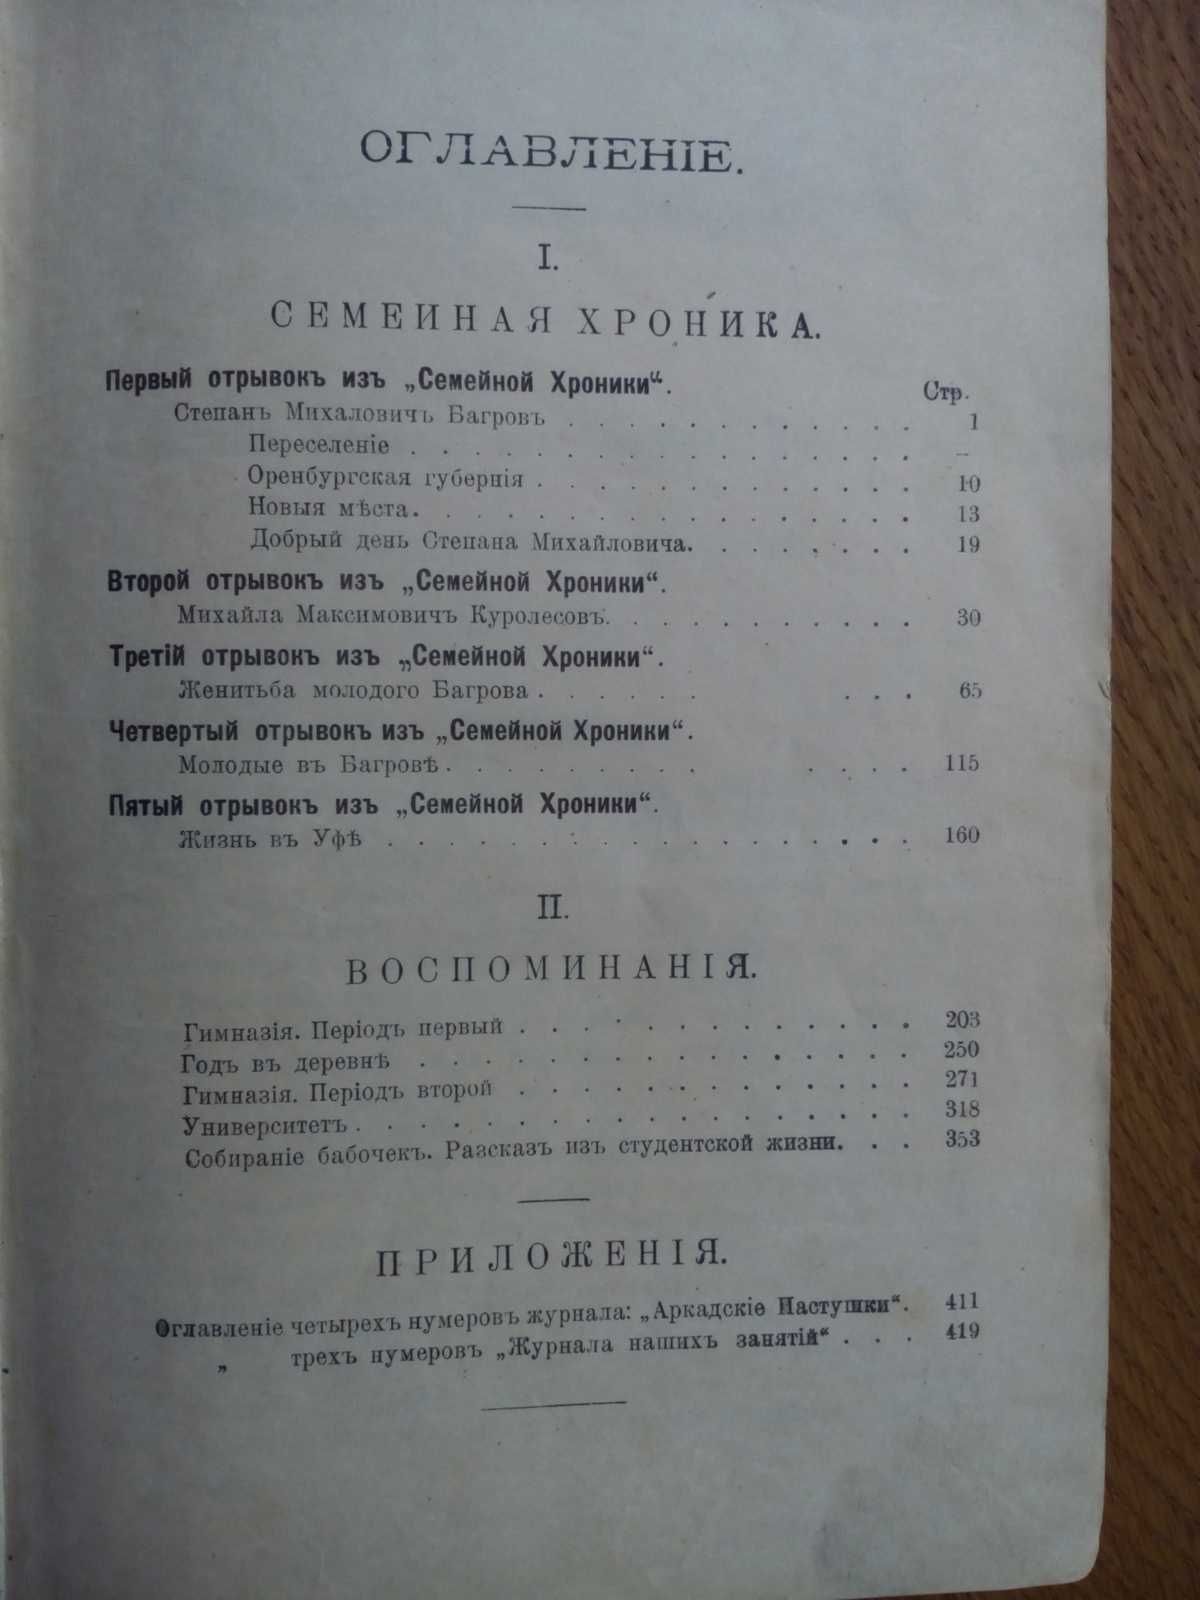 С.Т. Аксаков воспоминания и семейная хроника 1900г.